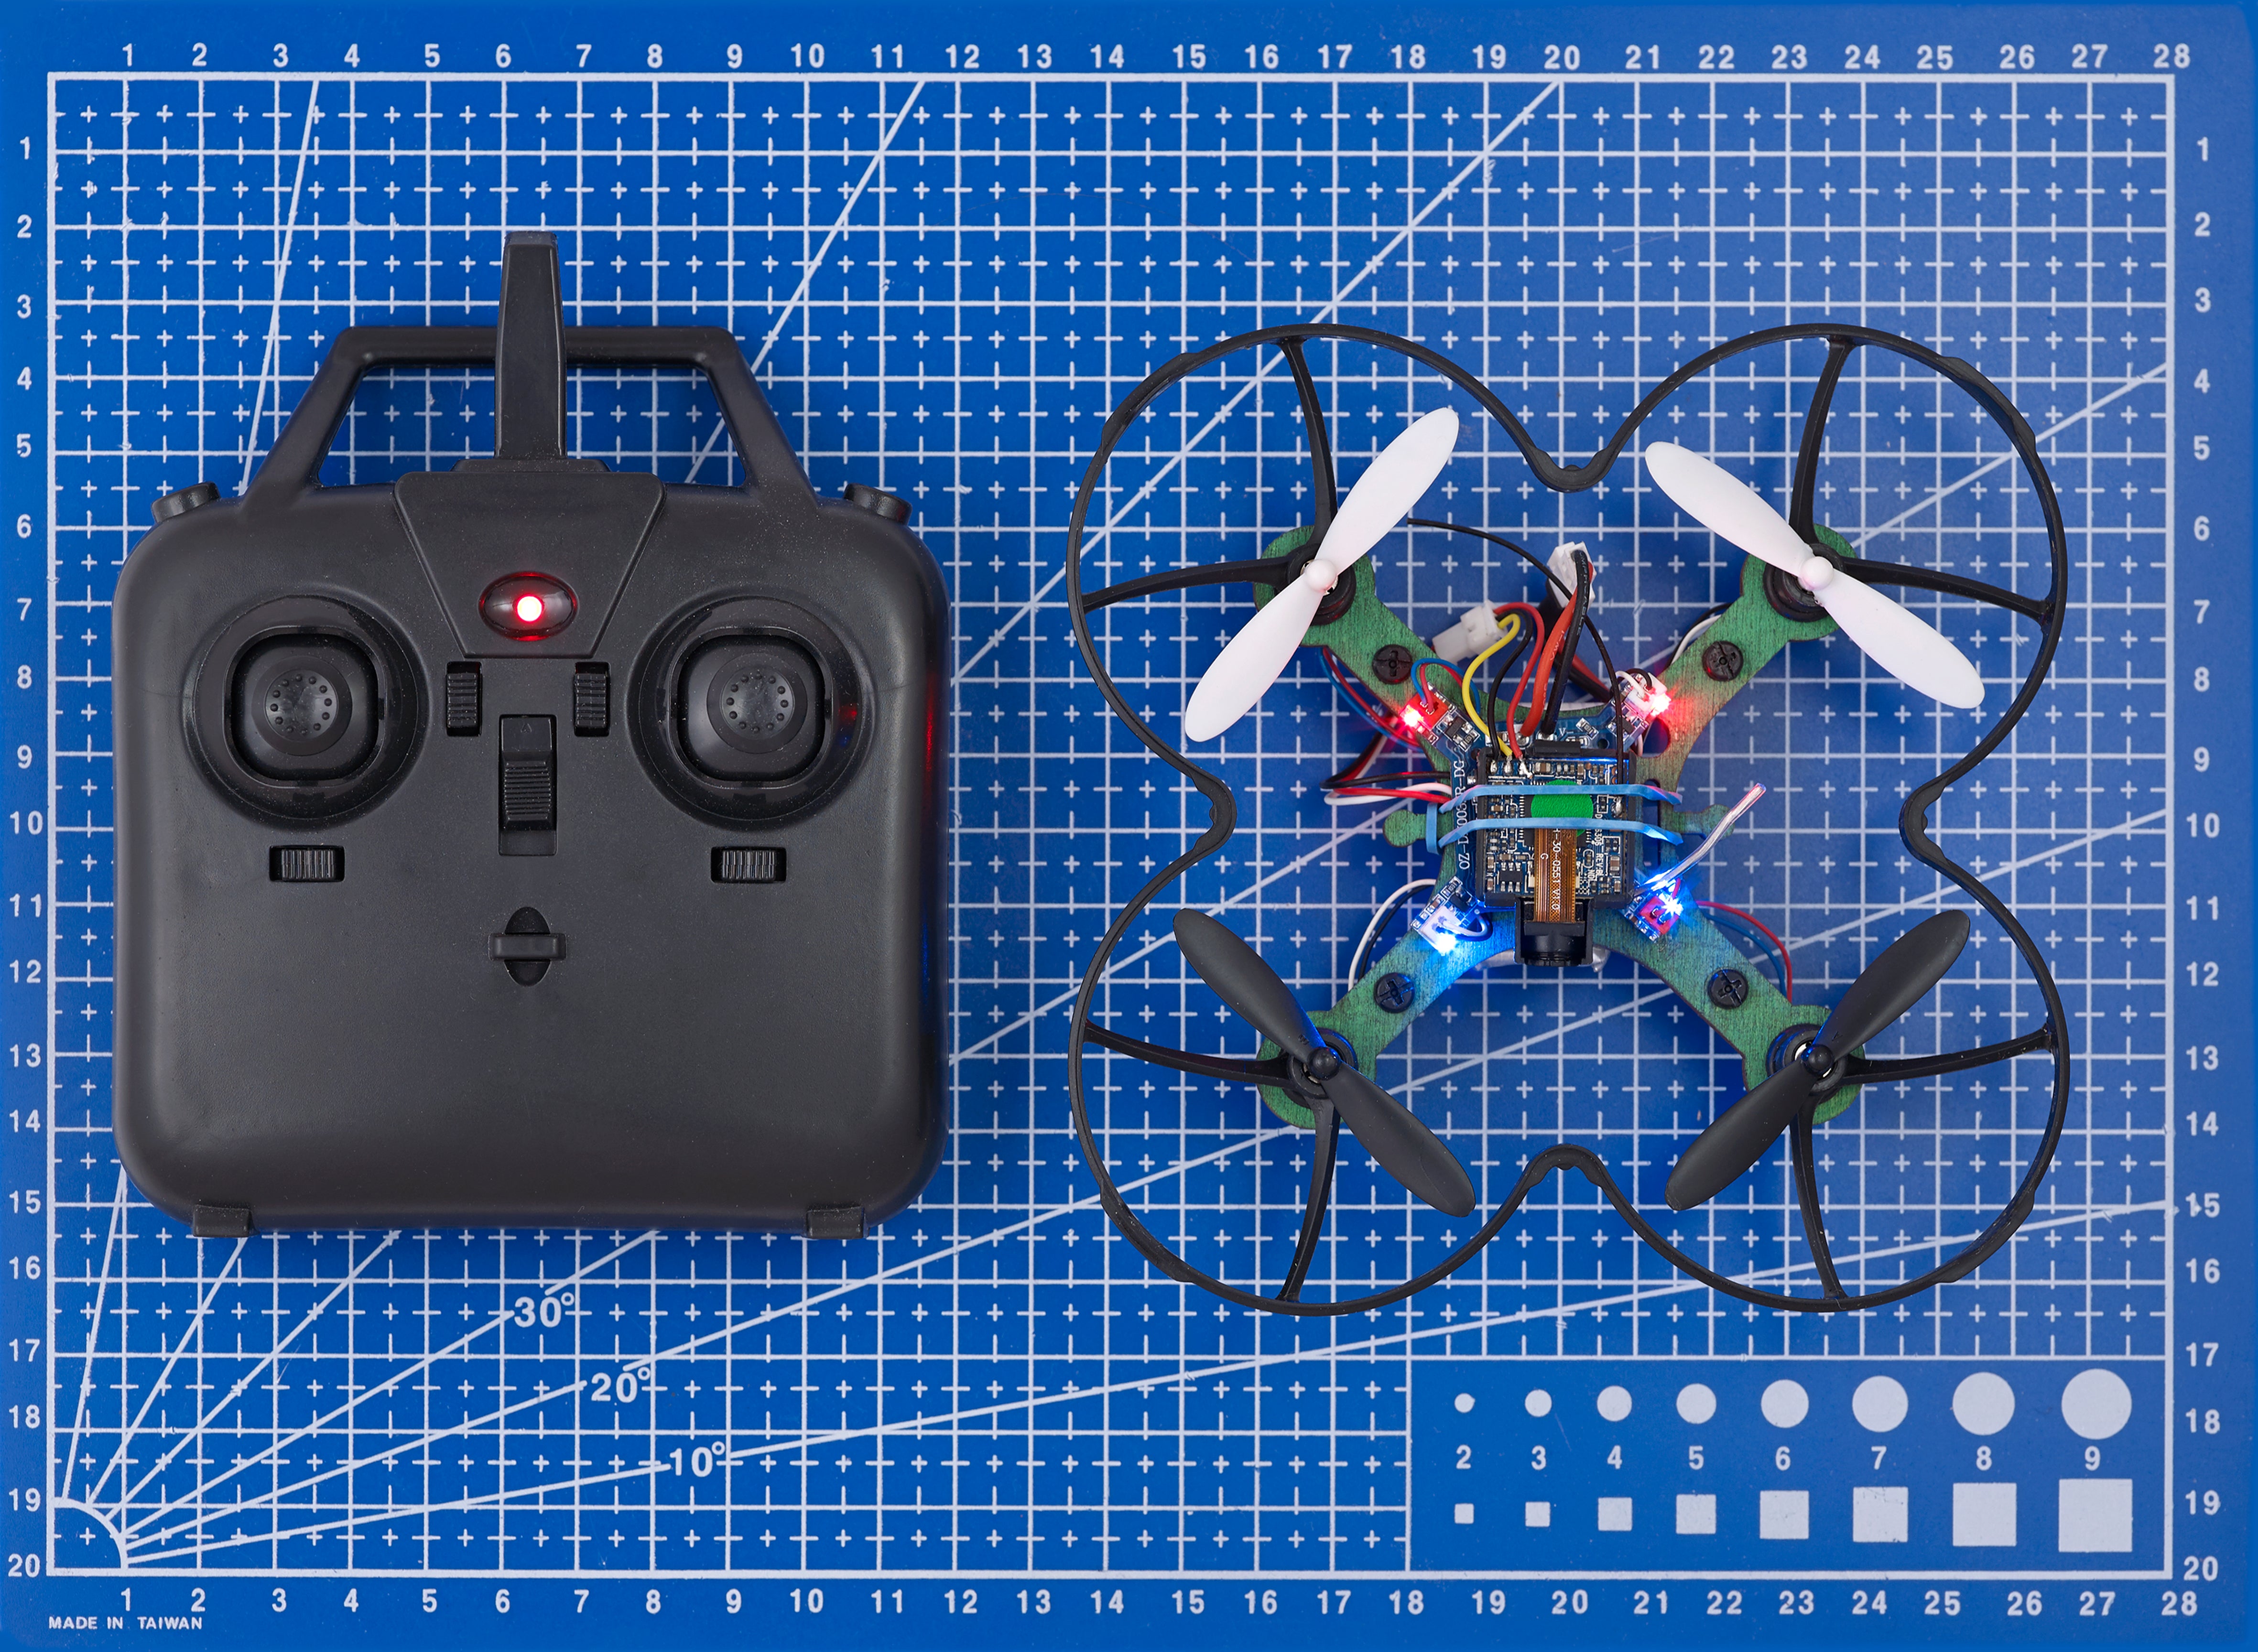 Kolibri Drone Klassesett med ekstra batteri og multilader